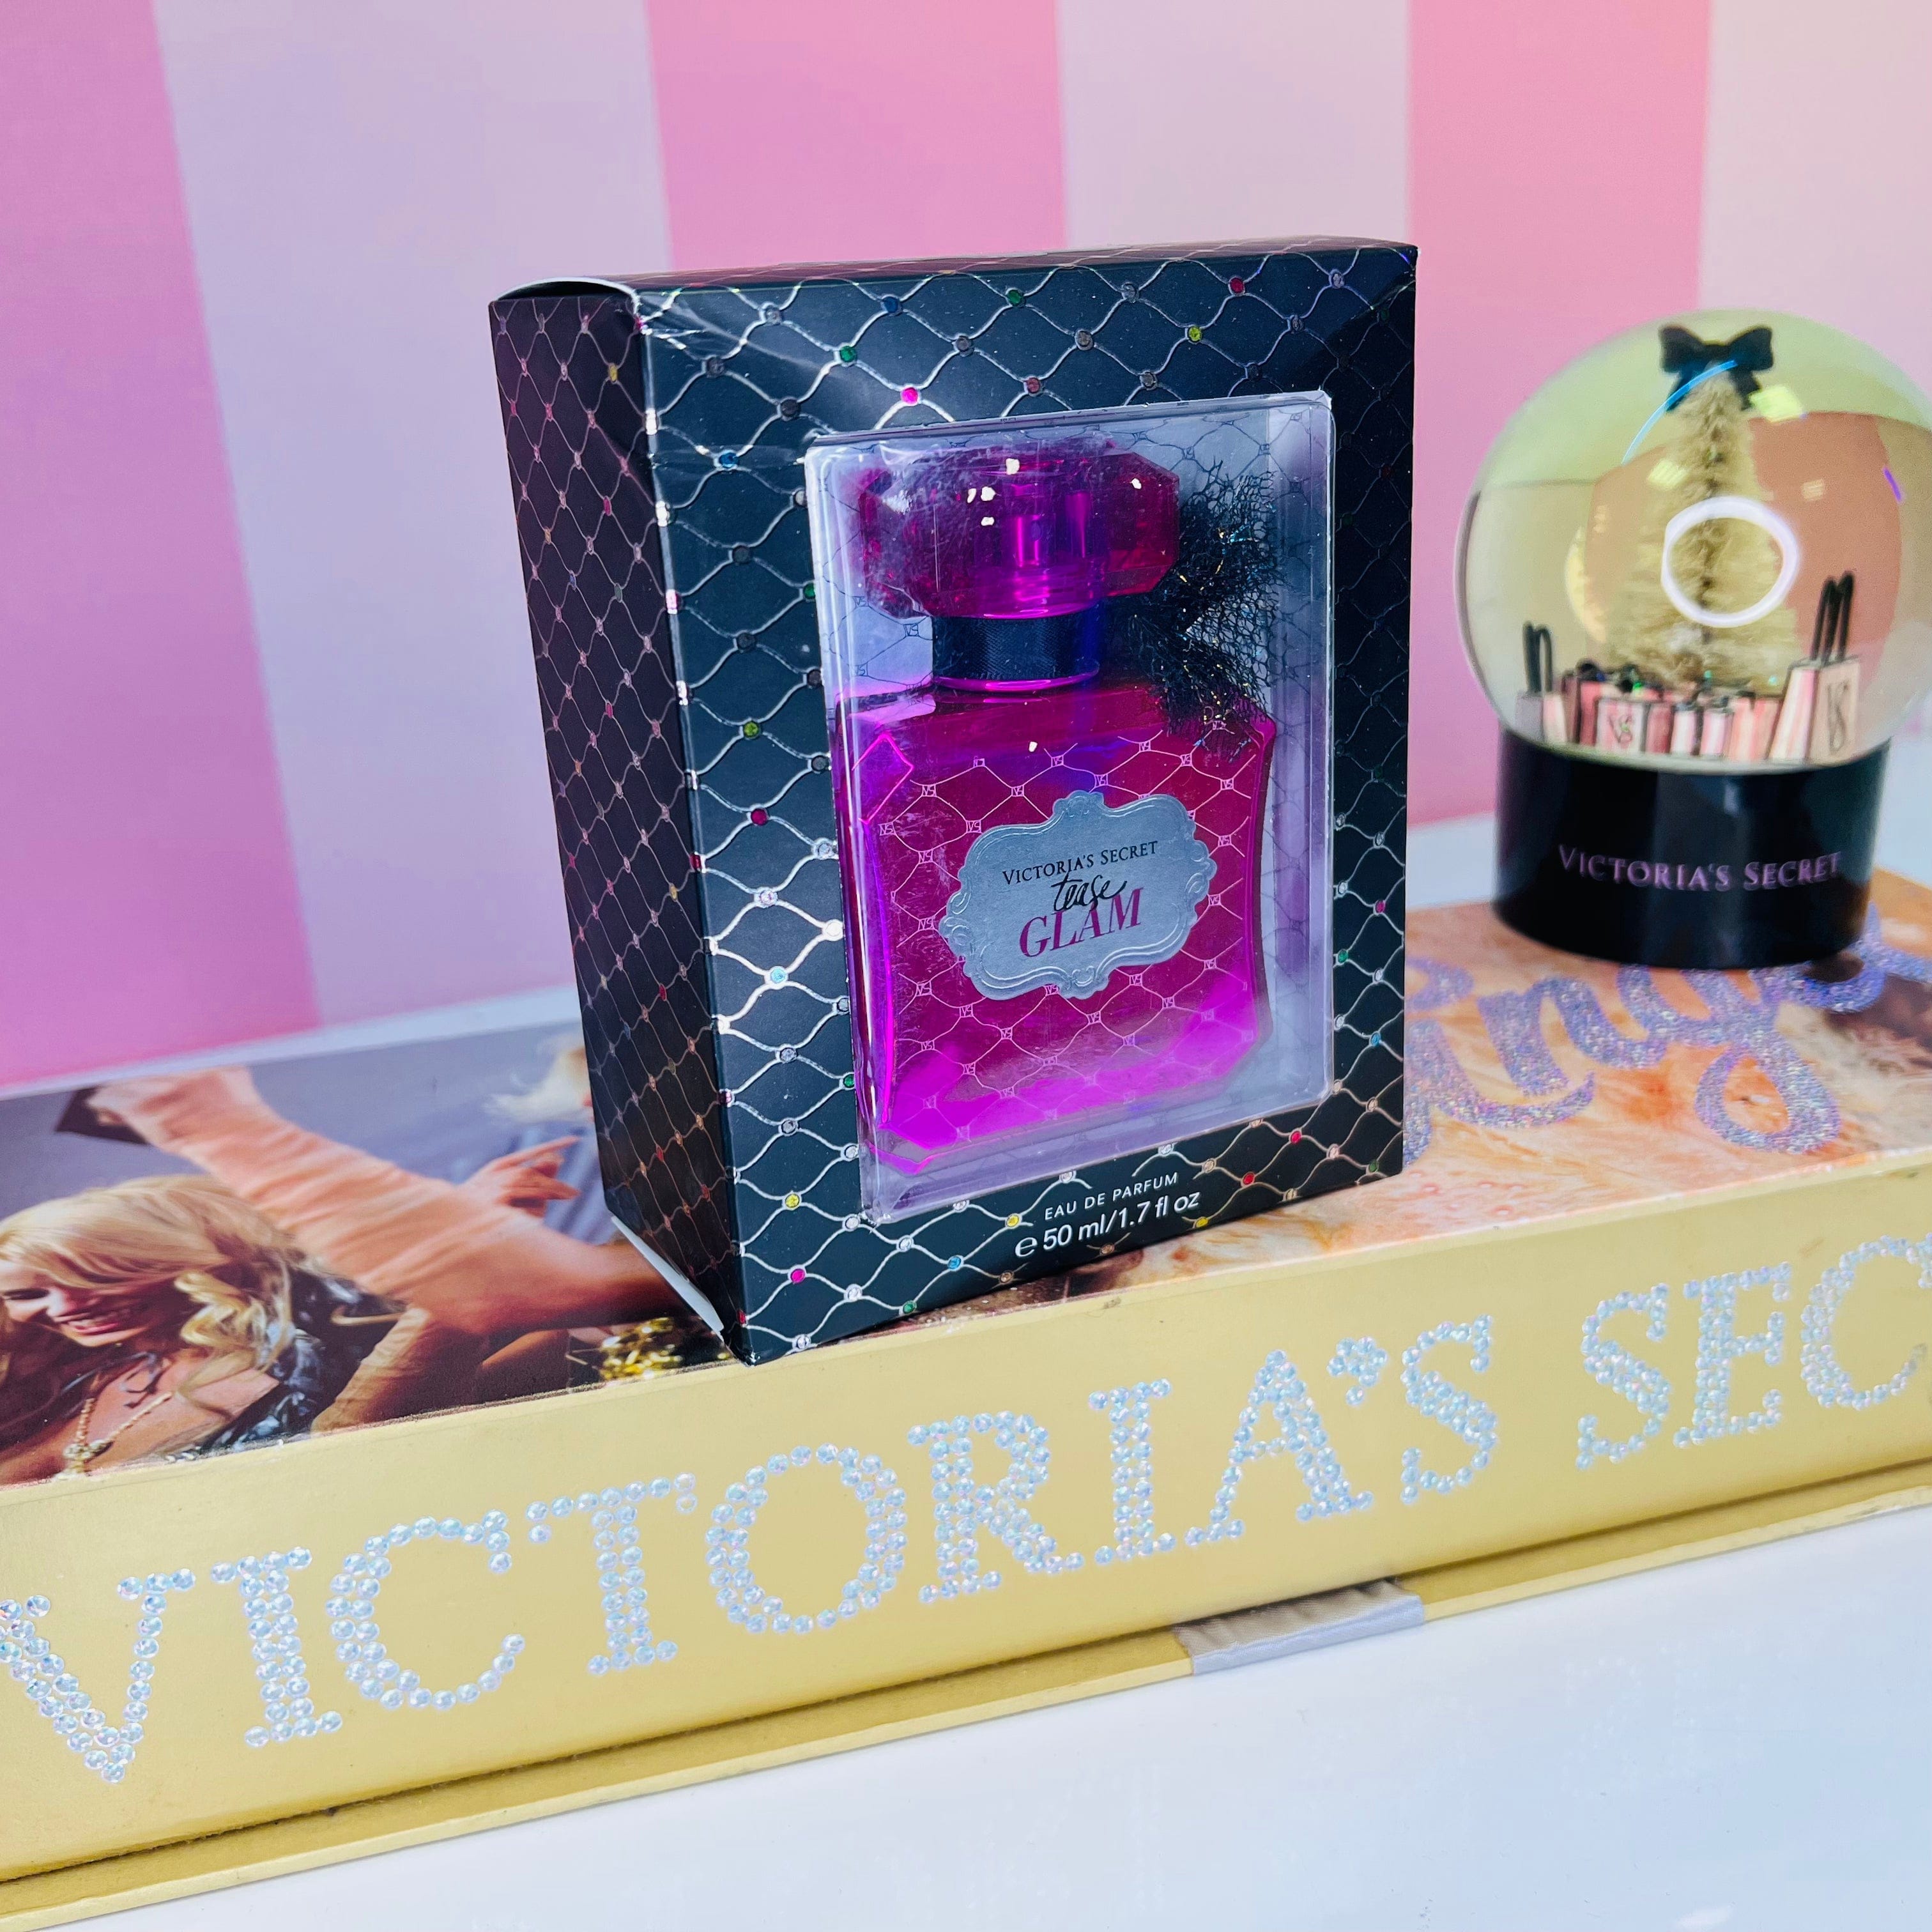 Parfém Tease Glam - 50ml / Nové se štítky - Parfémy Victoria’s Secret